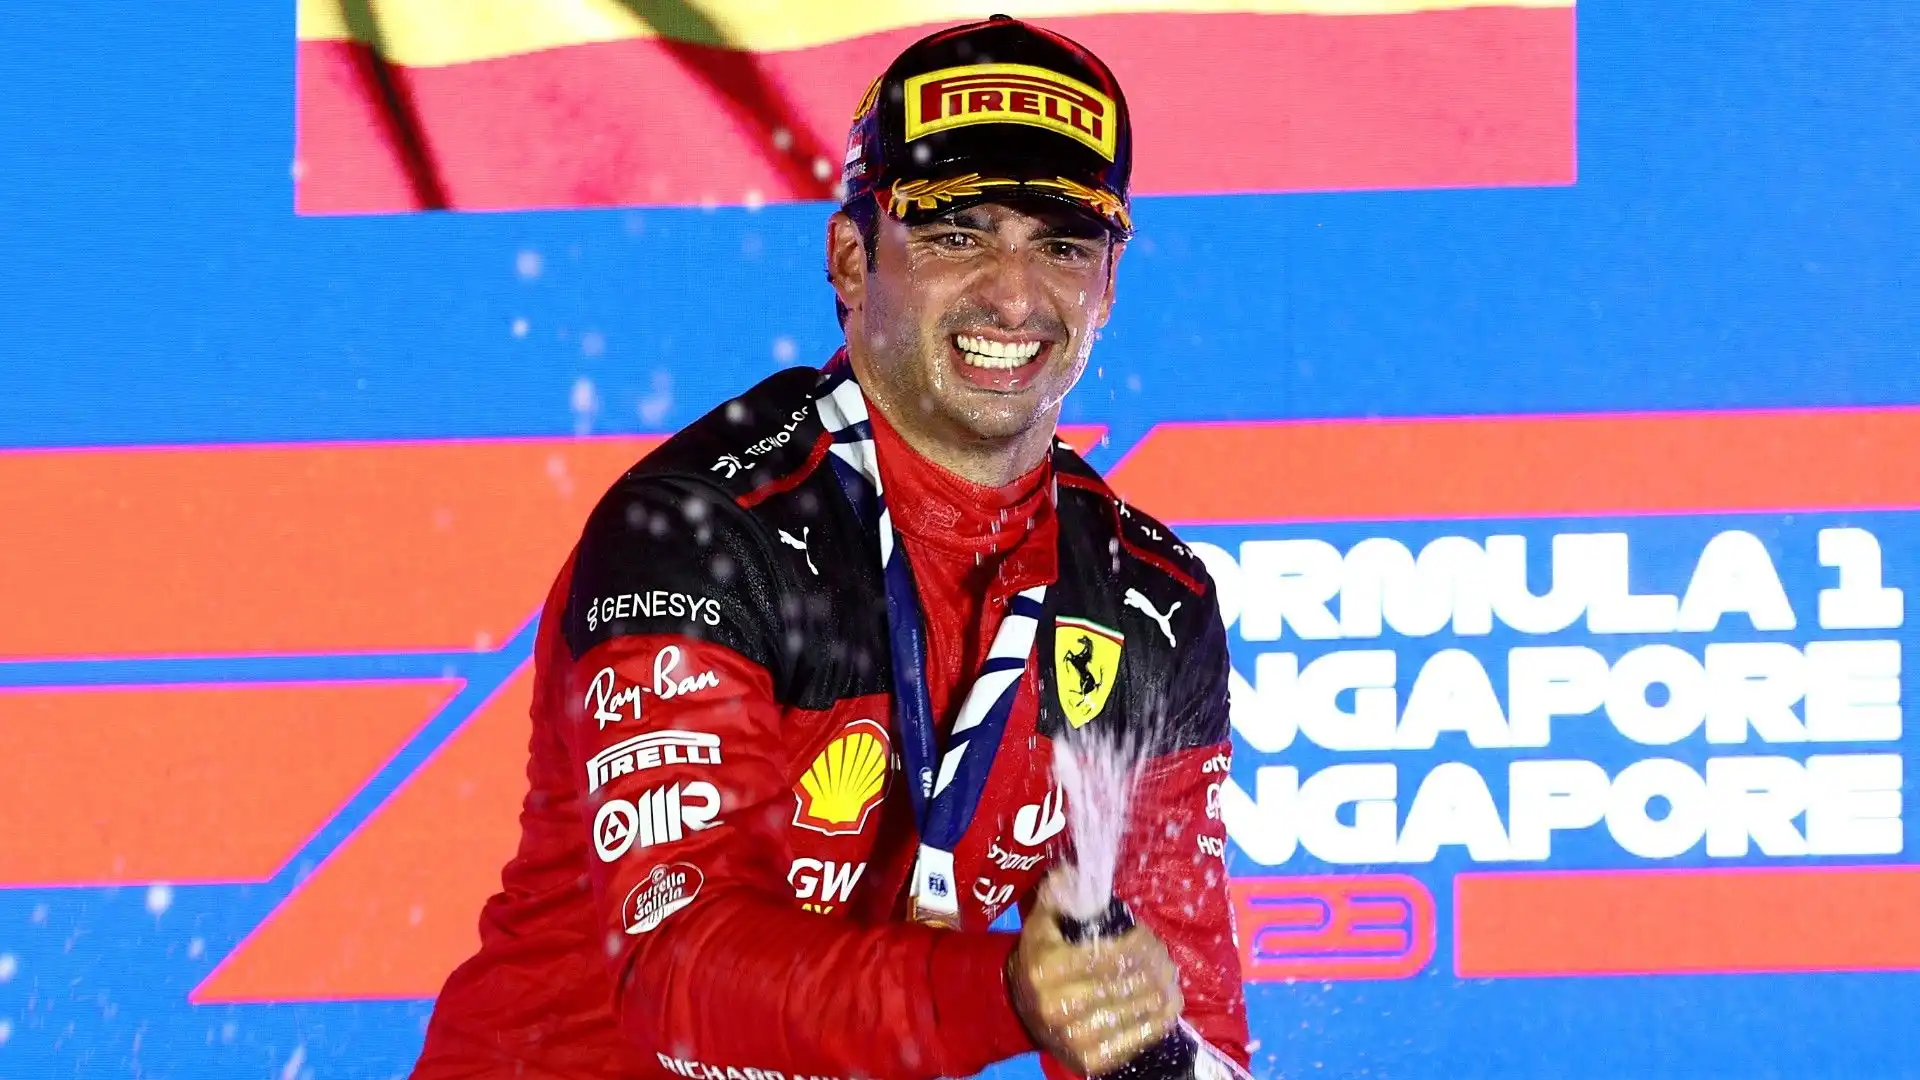 "E' stato un weekend incredibile – ha detto Sainz -. Devo dire grazie a ogni membro della Scuderia Ferrari per gli sforzi fatti"